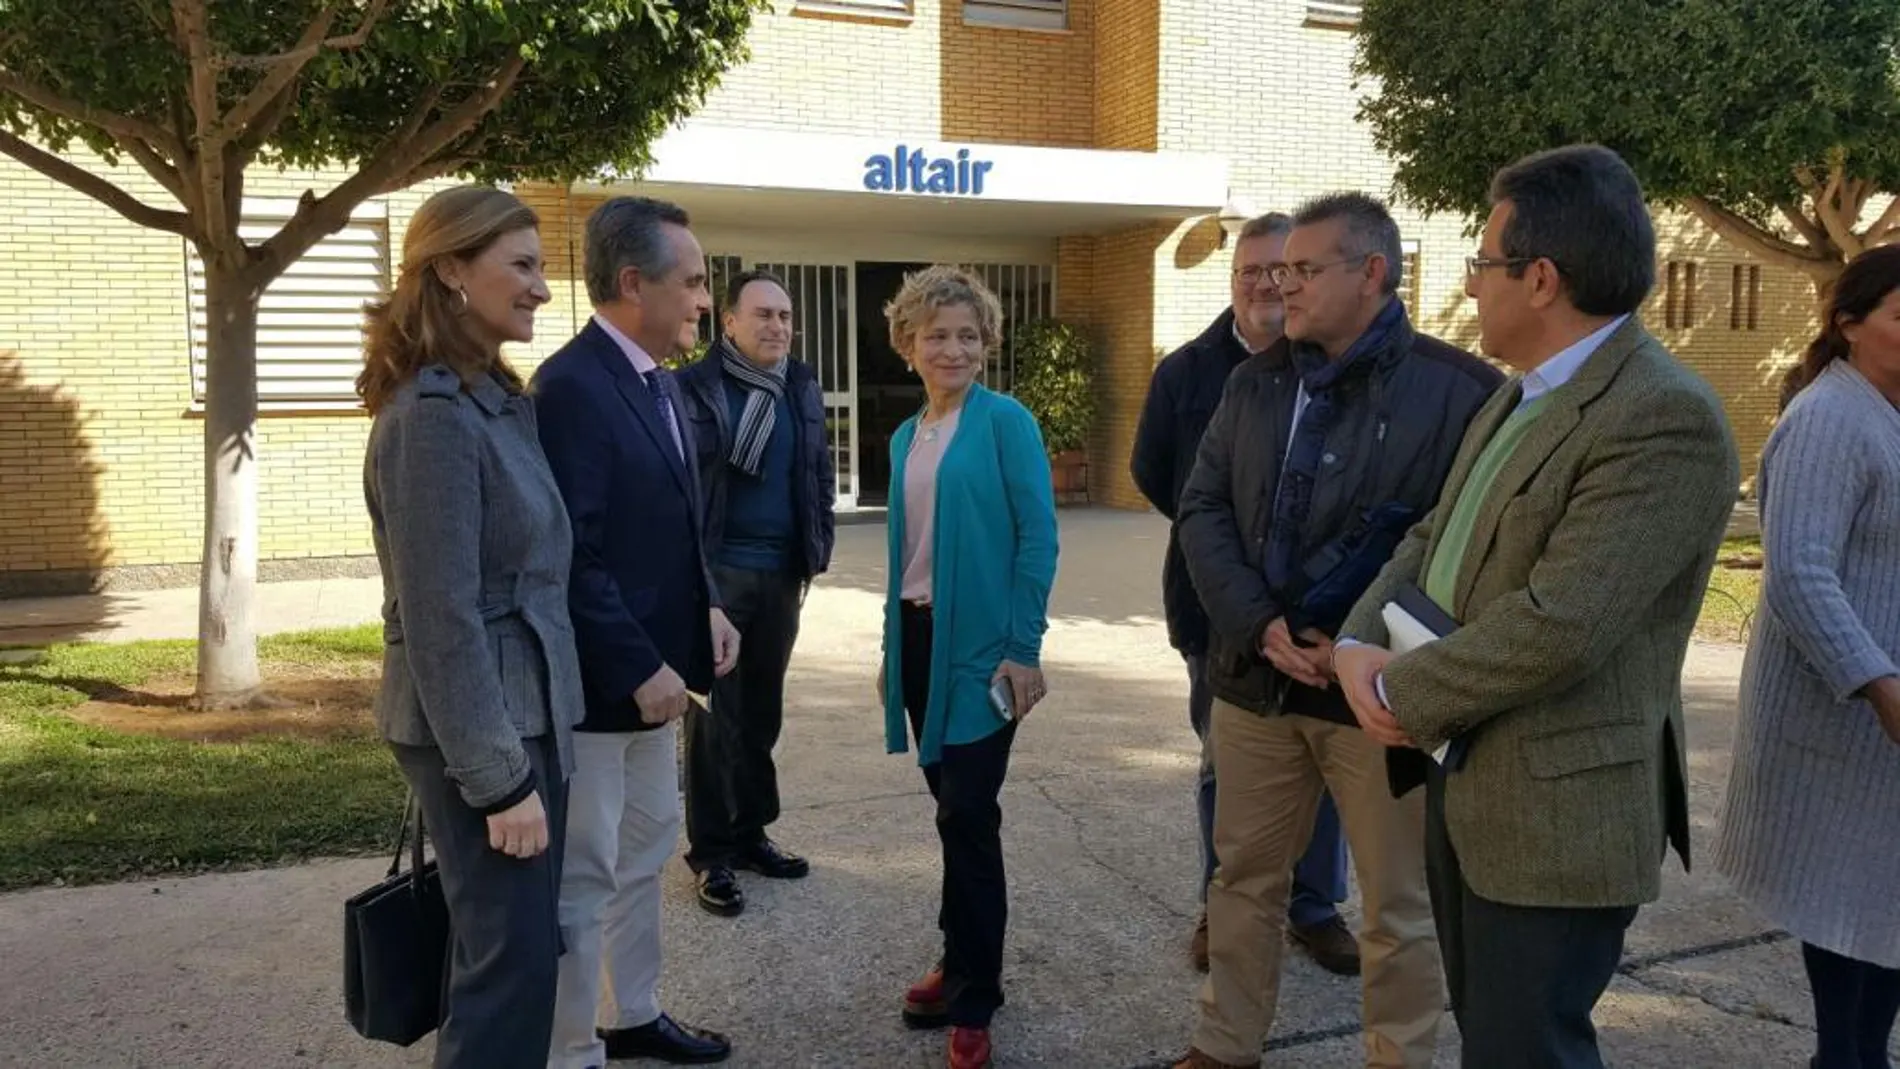 Miembros del PP visitaron el colegio Altair para apoyar a los centros de educación diferenciada a los que la Junta niega la renovación de los conciertos